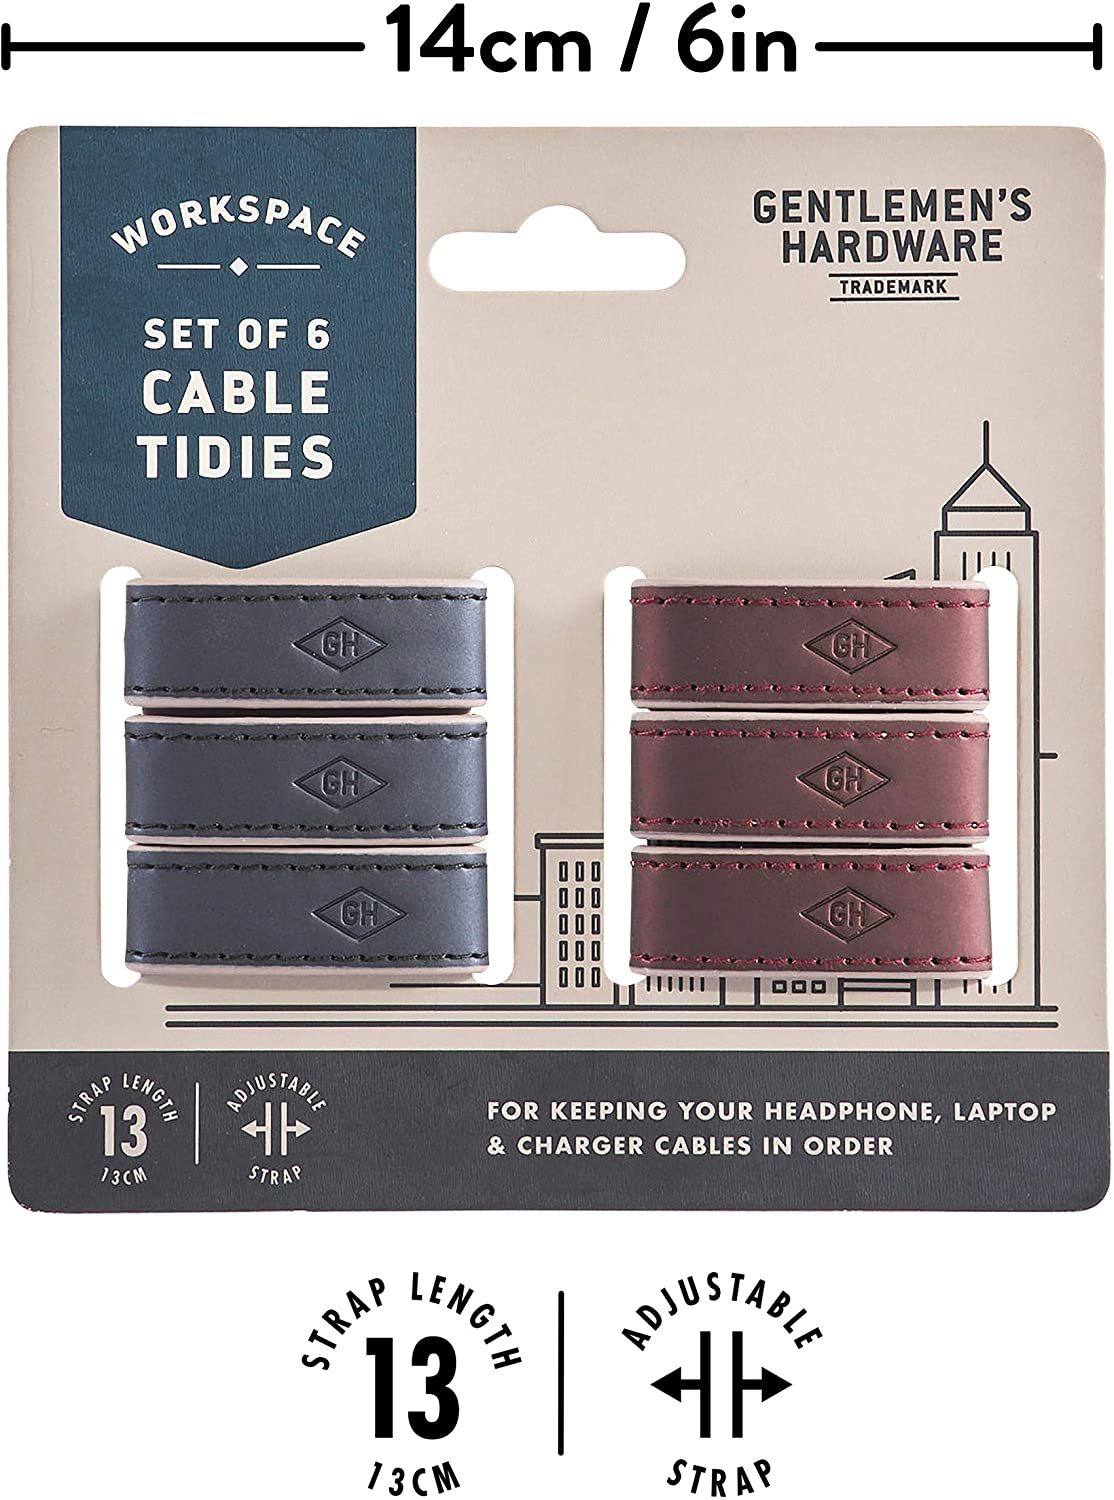 Gentlemen's Hardware Cable Tidies Set of 6